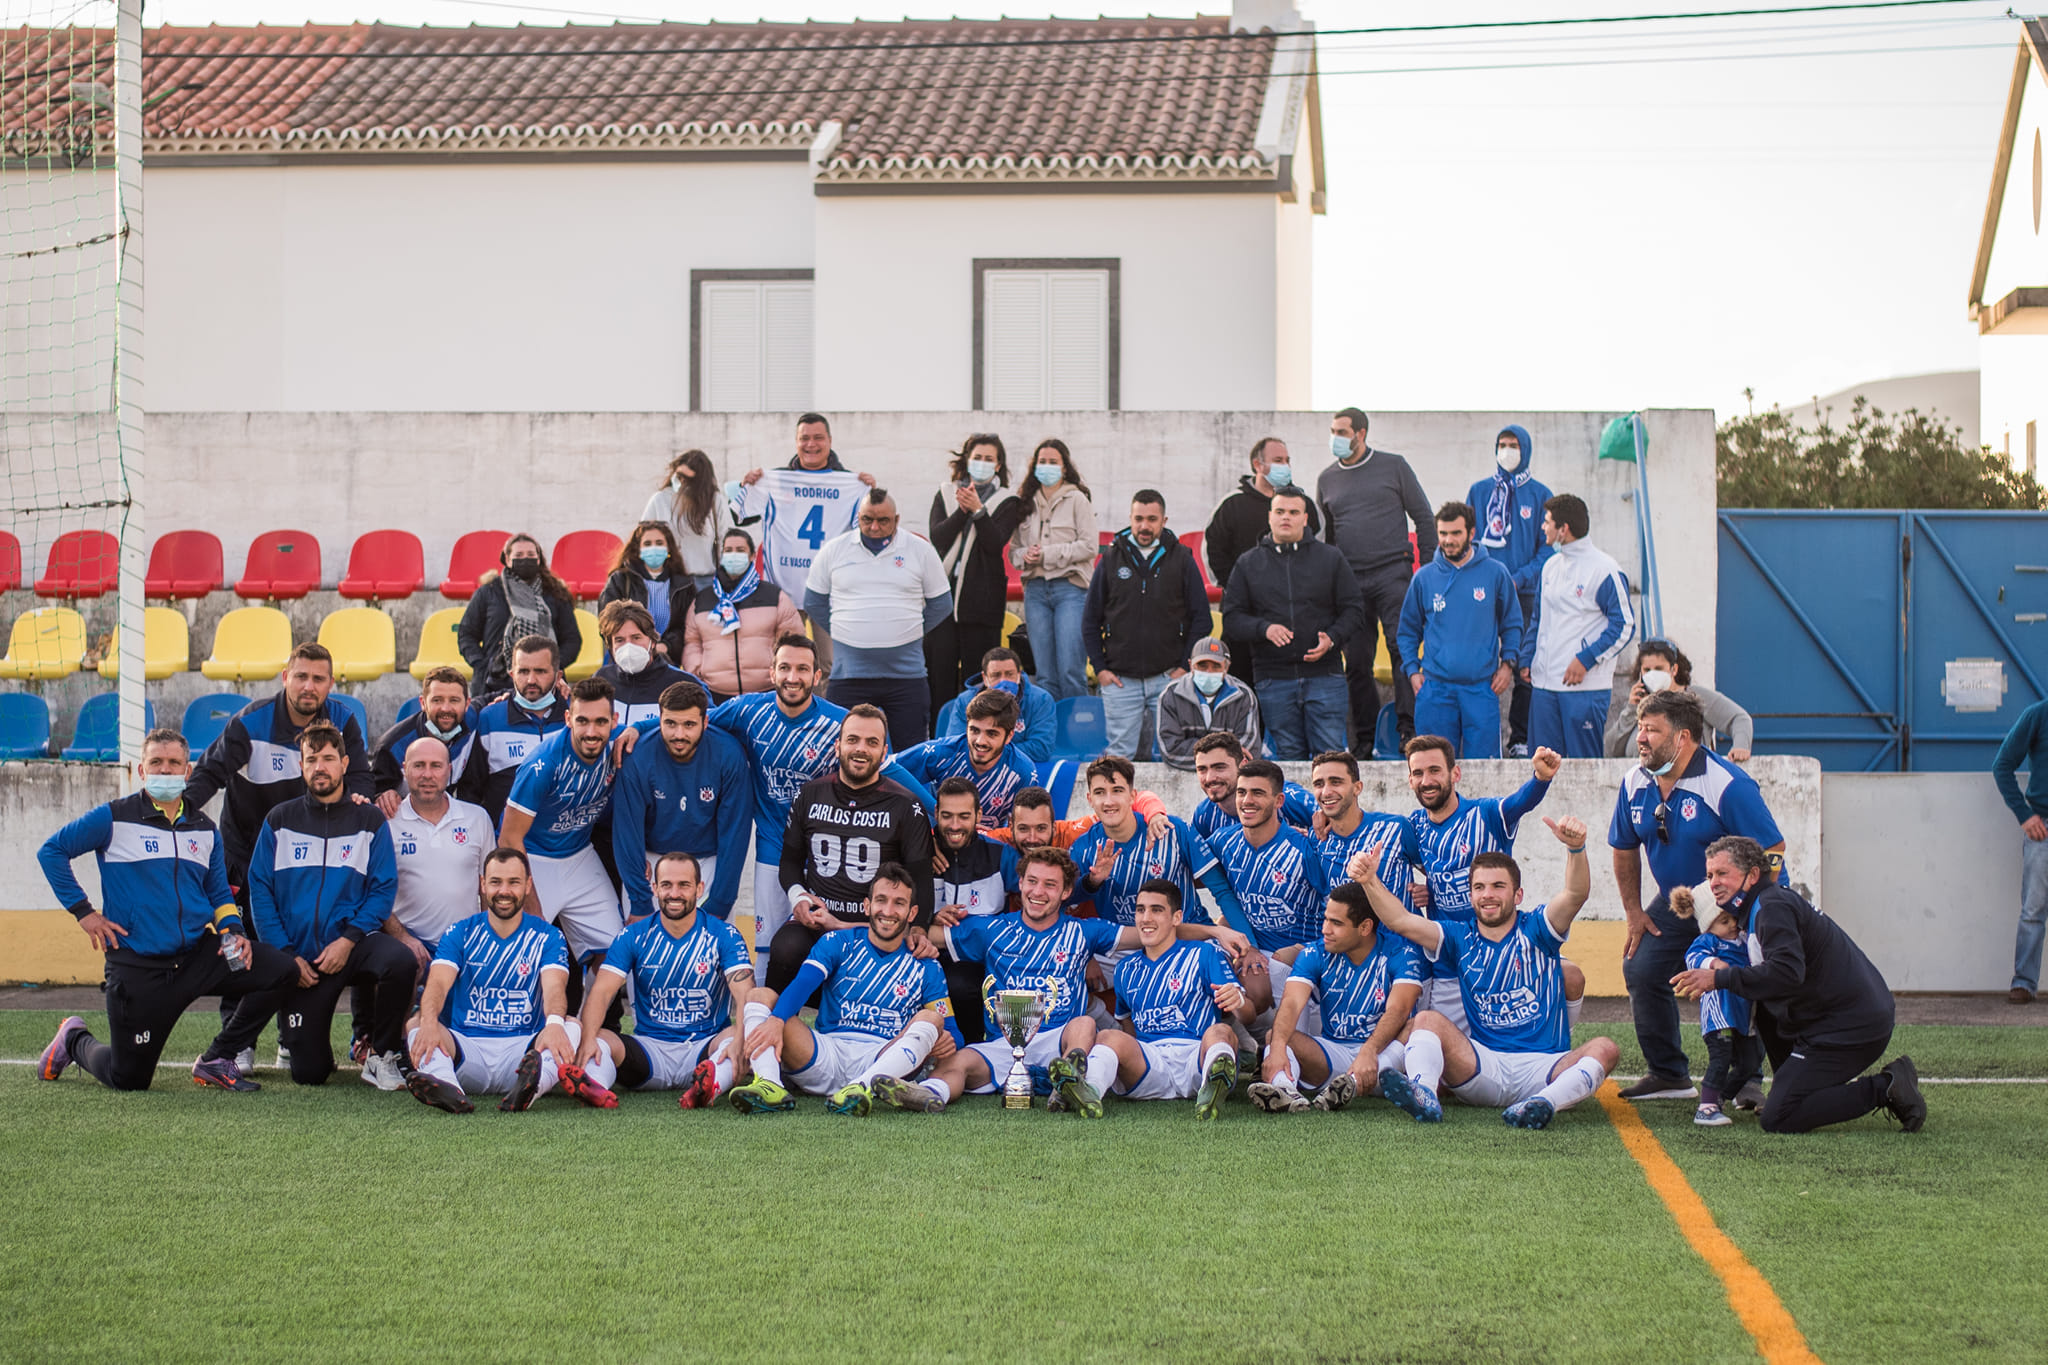 Clube Futebol Vasco da Gama venceu a Taça de Honra - João de Brito Zeferino pela primeira vez! 